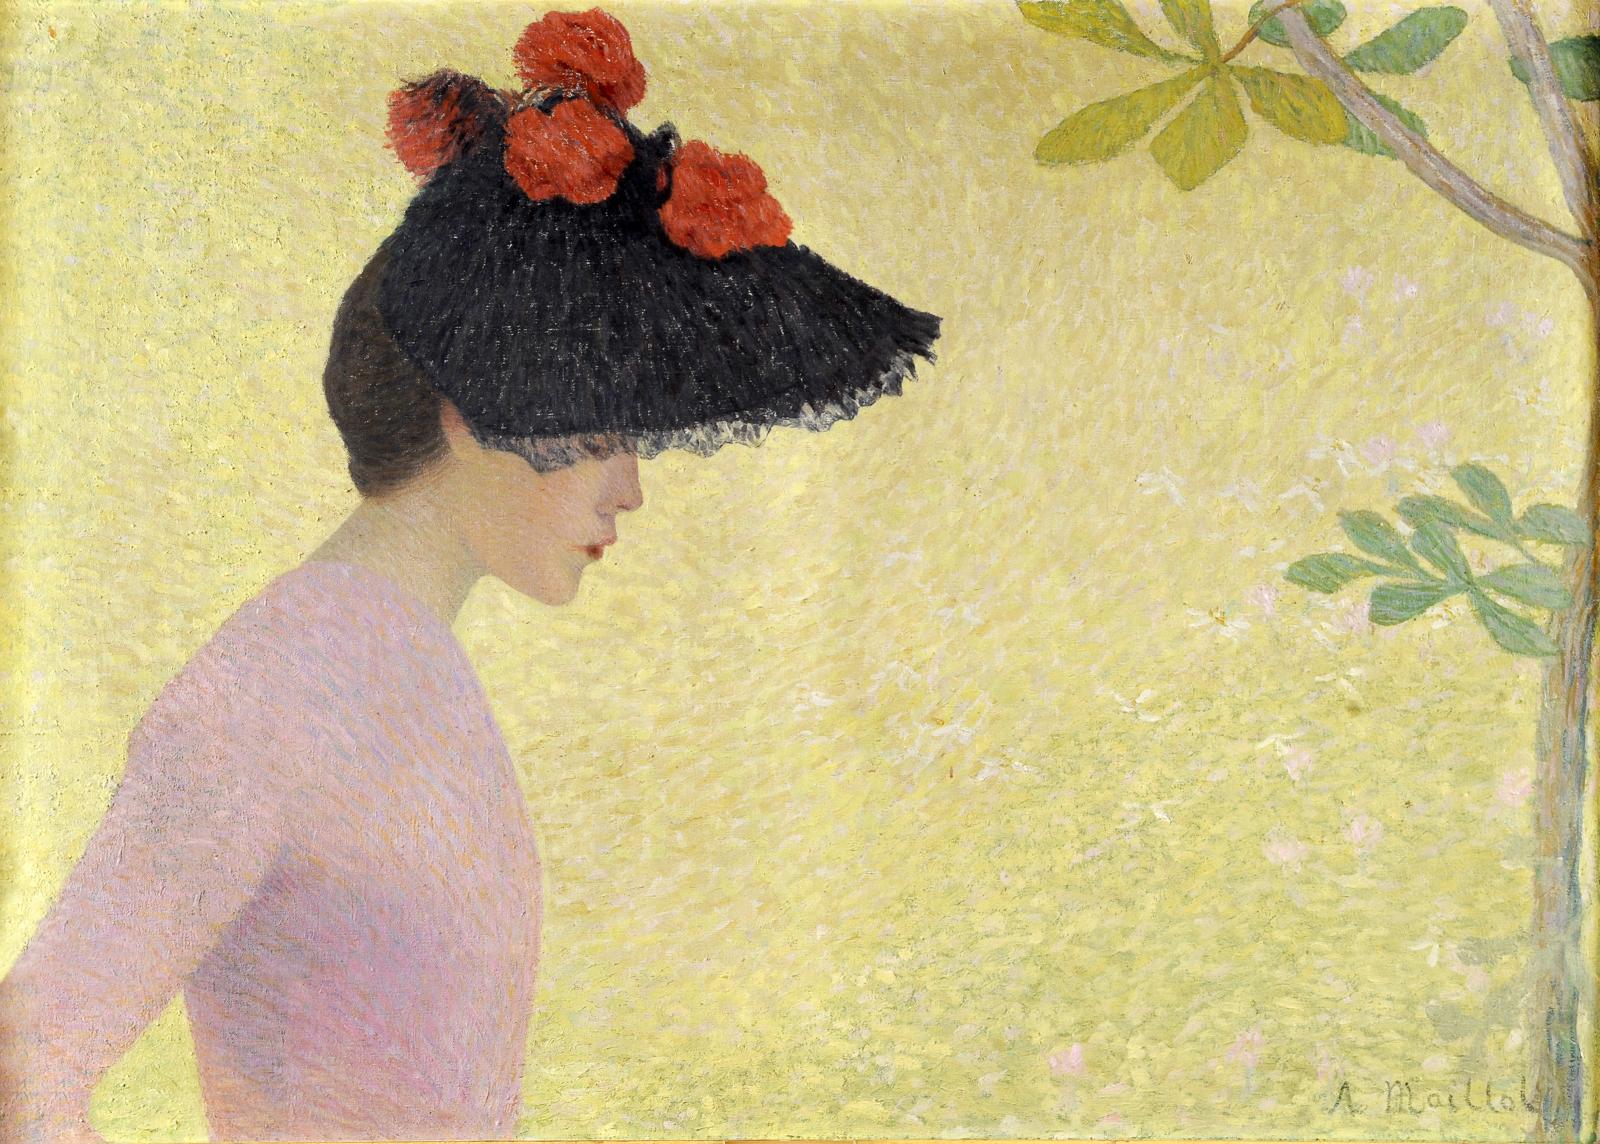 Aristide Maillol (1861-1944), Jeune fille de profil, 1891 (ou vers 1896), huile sur toile, 100 x 73 cm. Dépôt du musée d’Orsay, Paris. © pascale march